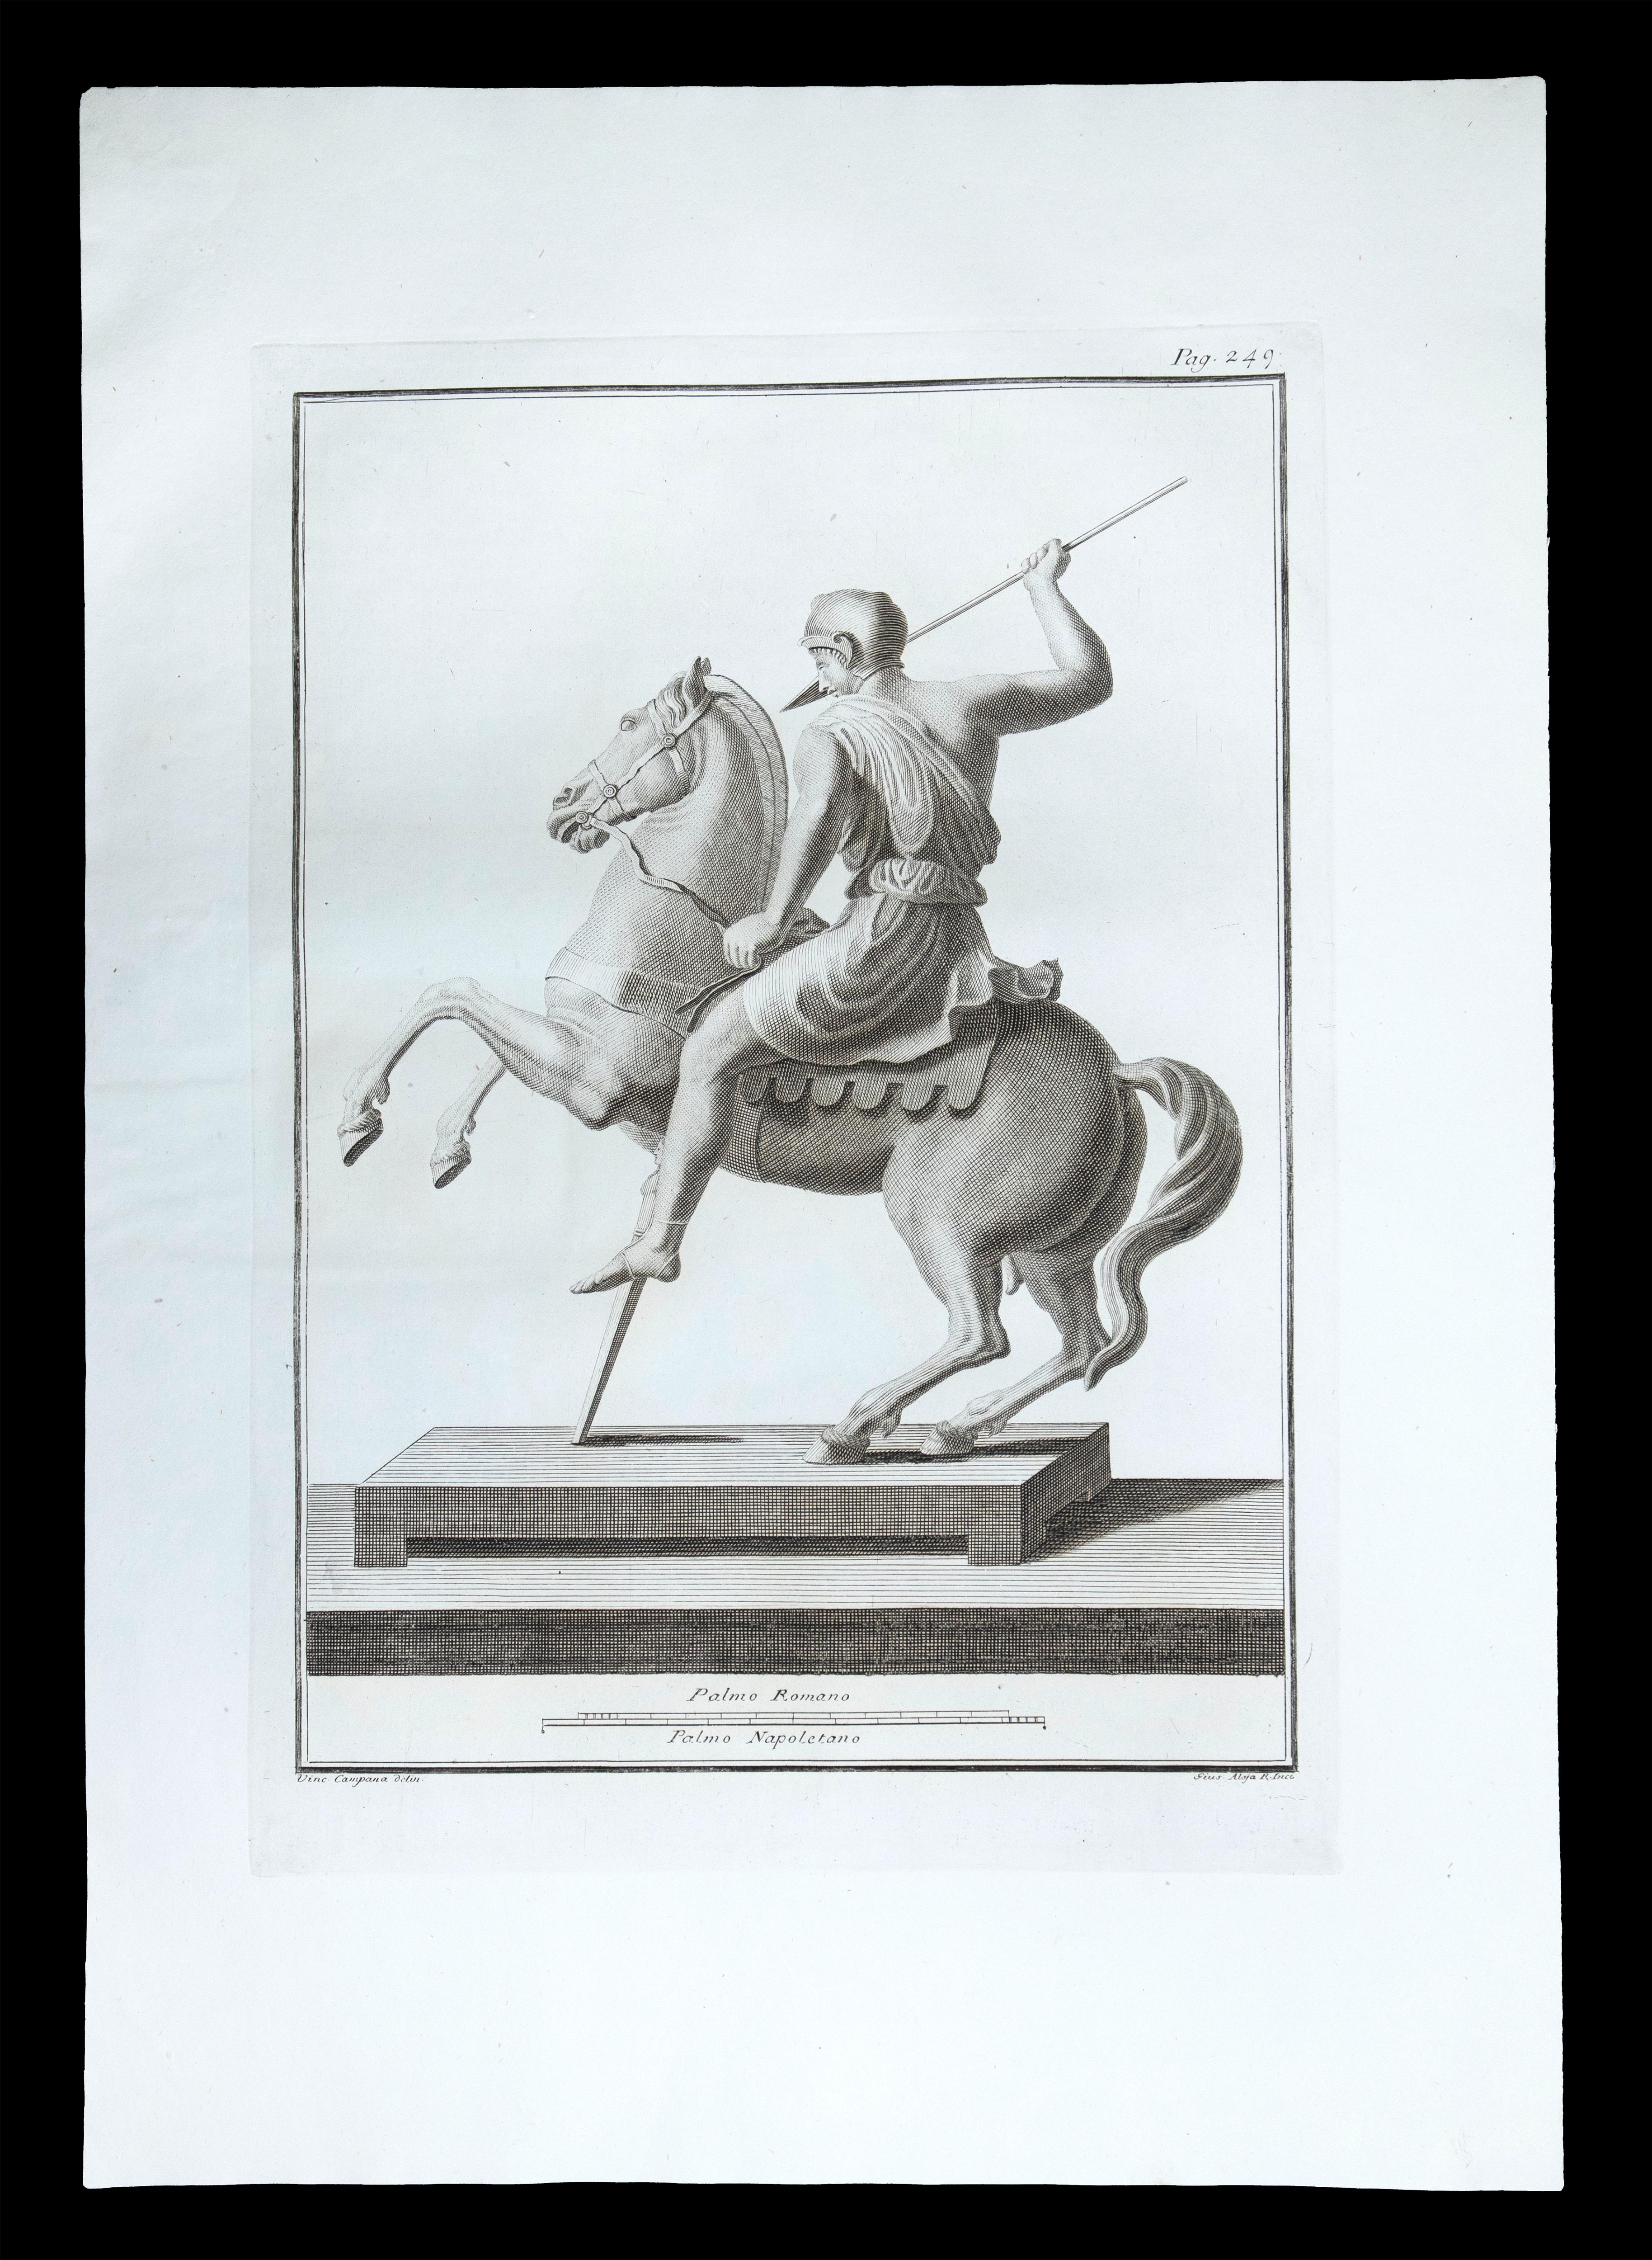 Statue romaine antique, de la série "Antiquités d'Herculanum", est une gravure originale sur papier réalisée par Pietro Campana au XVIIIe siècle.

Signé sur la plaque, en bas à gauche.

Bonnes conditions.

La gravure appartient à la suite d'estampes